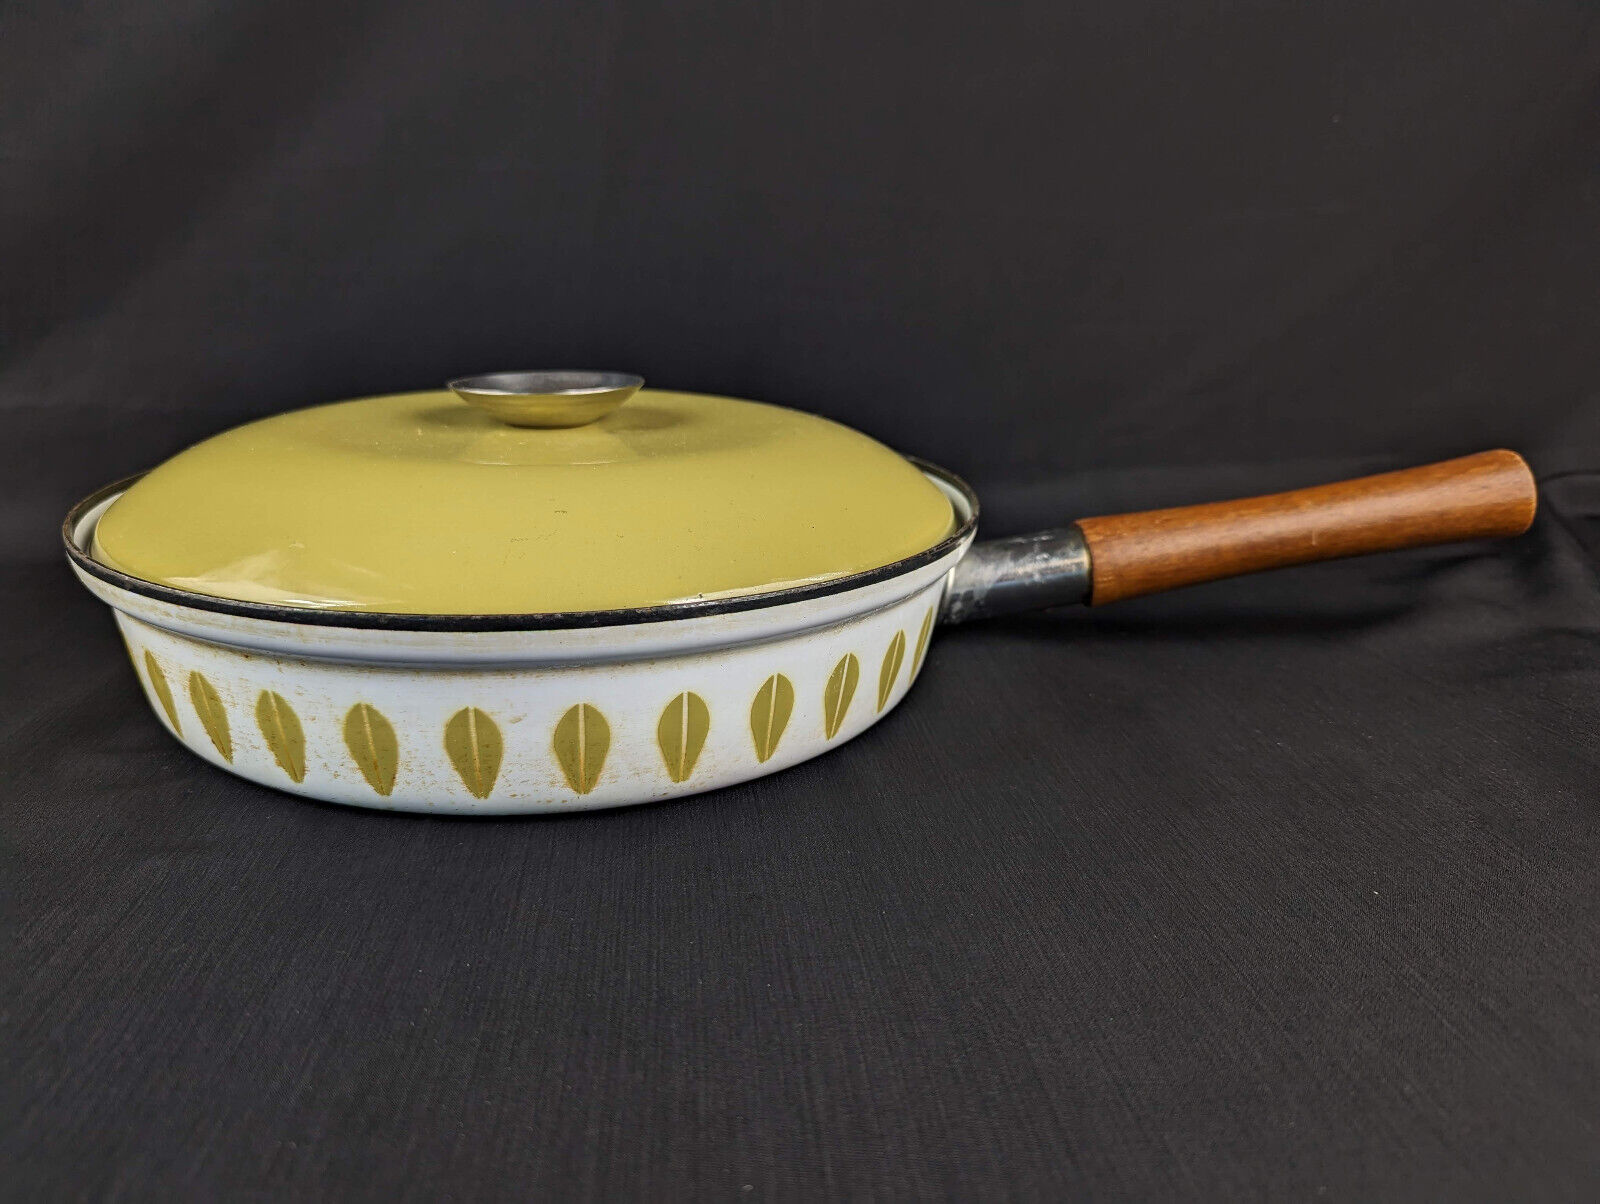 Vintage Mid Century Cathrineholm Lotus Enamelware Skillet Frying Pan Cookware